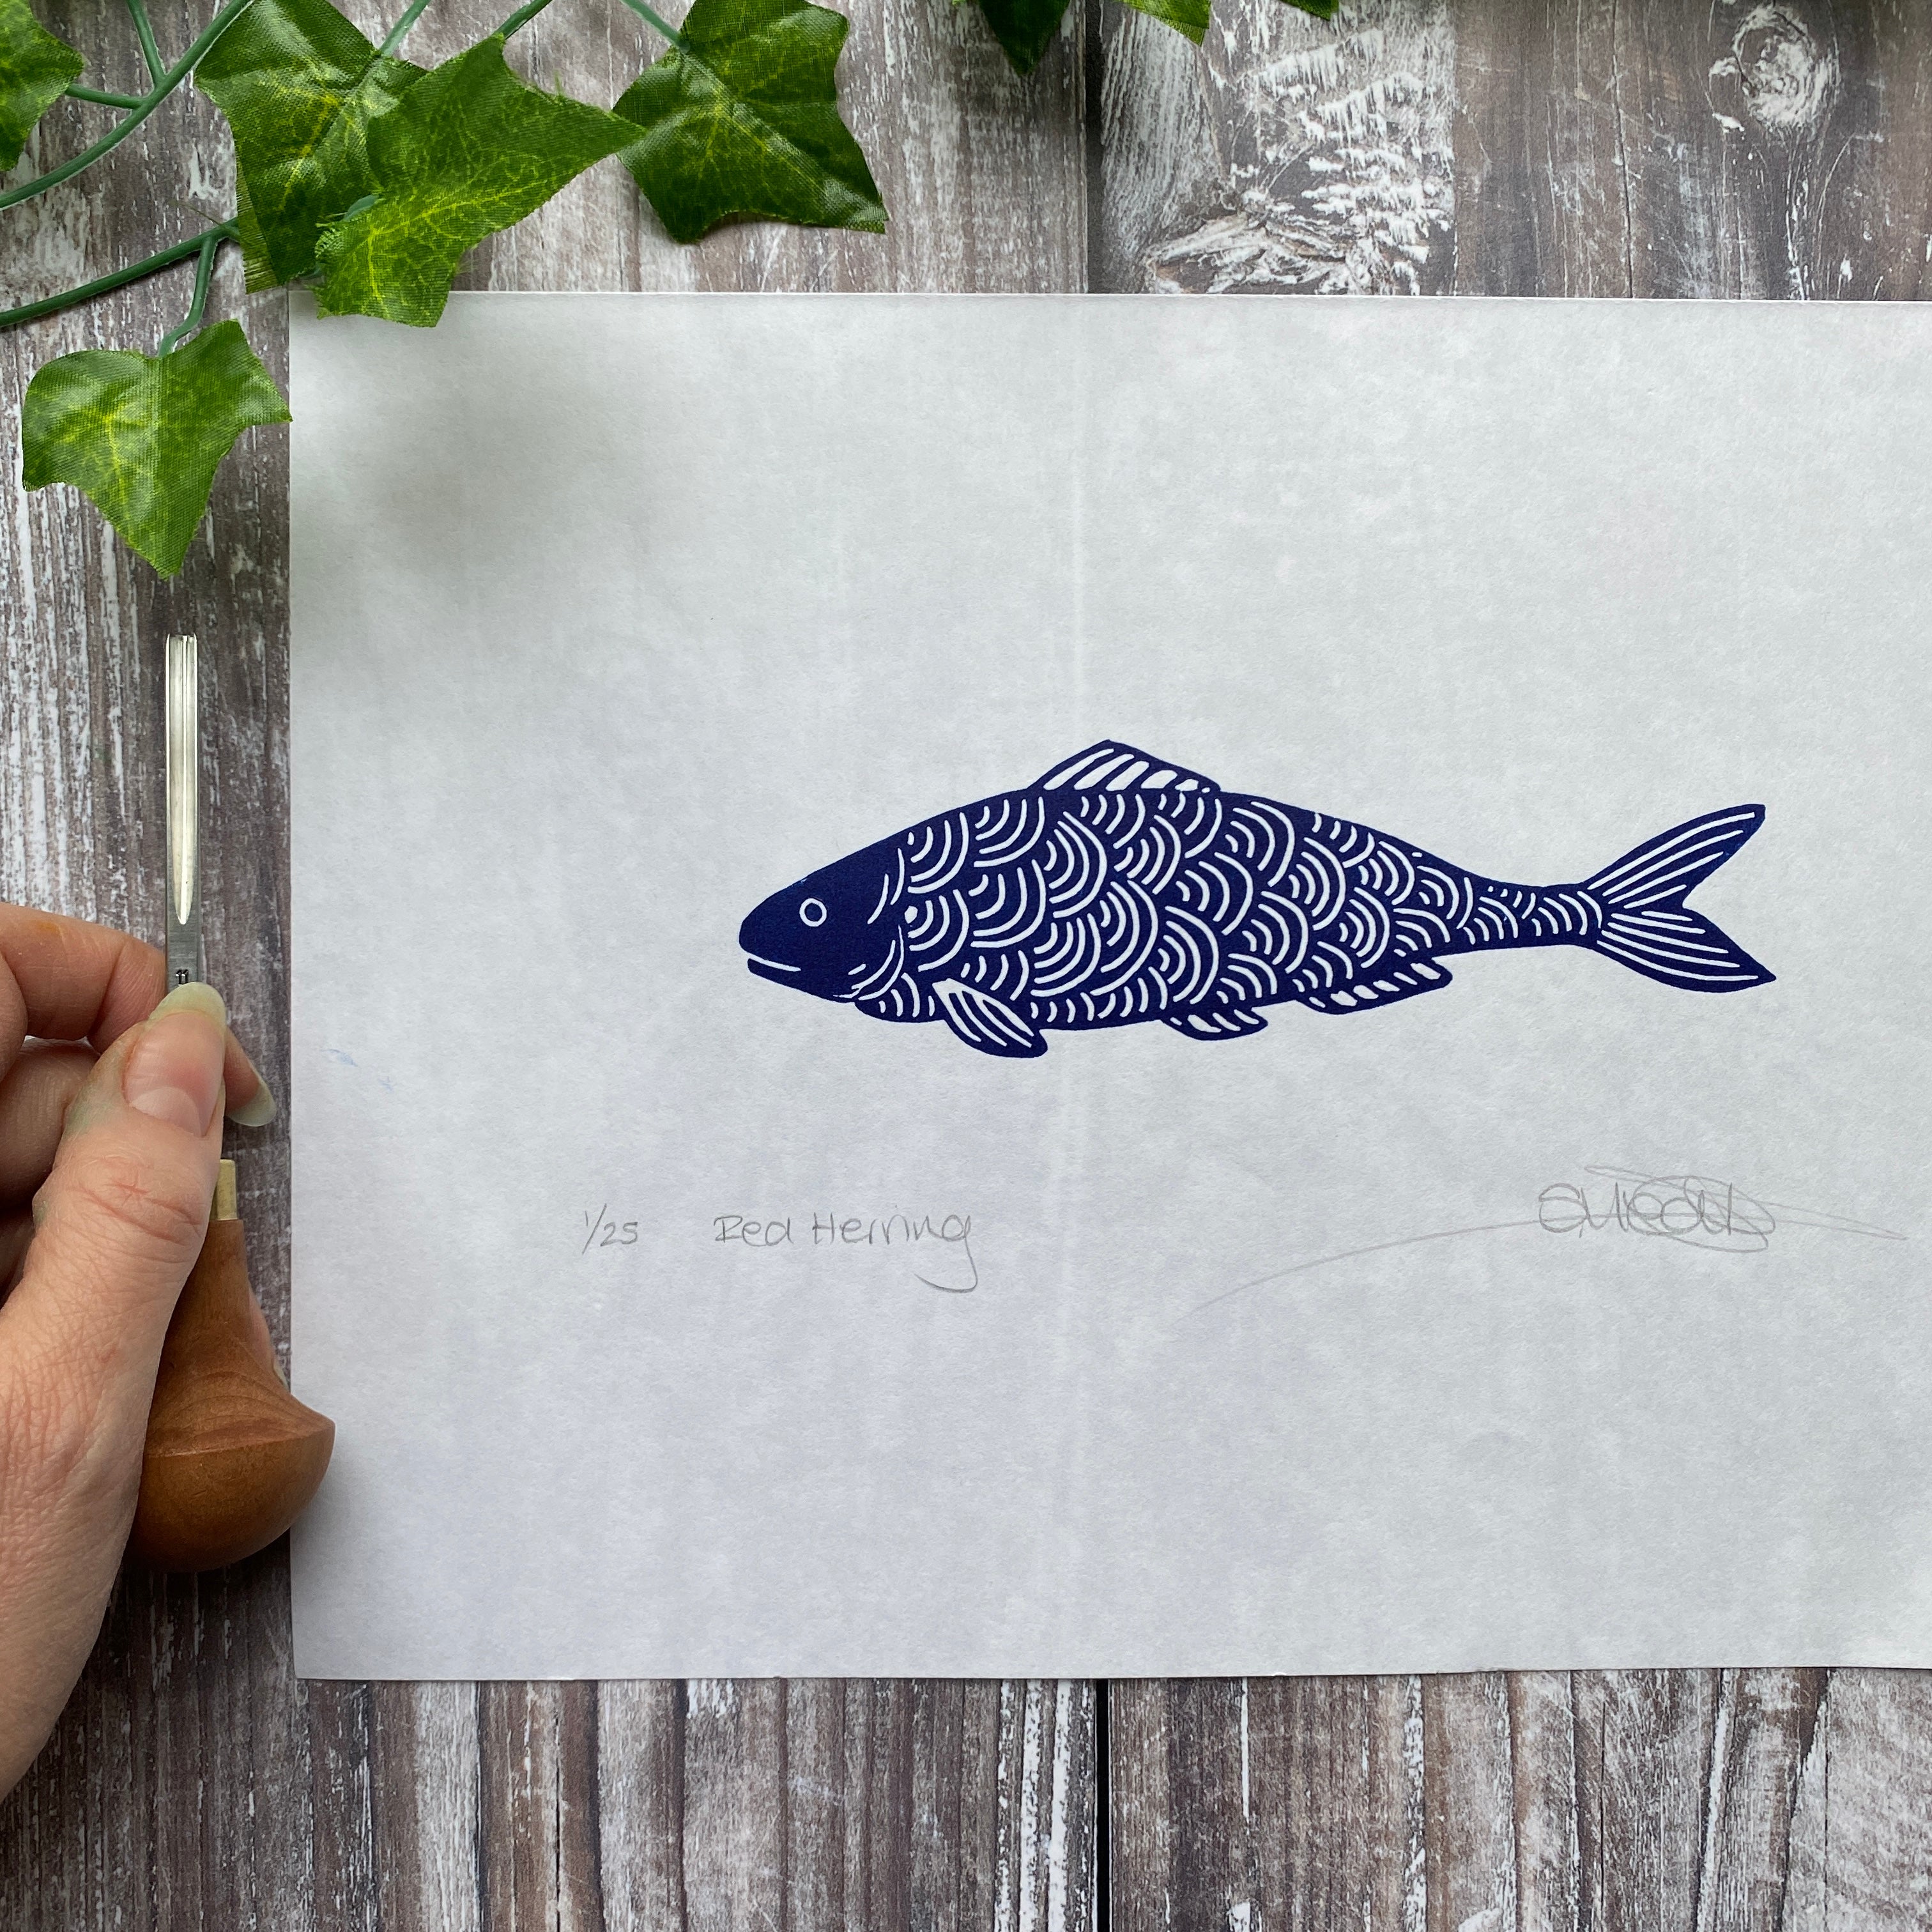 Red Herring (Fish) - Original Linocut Print